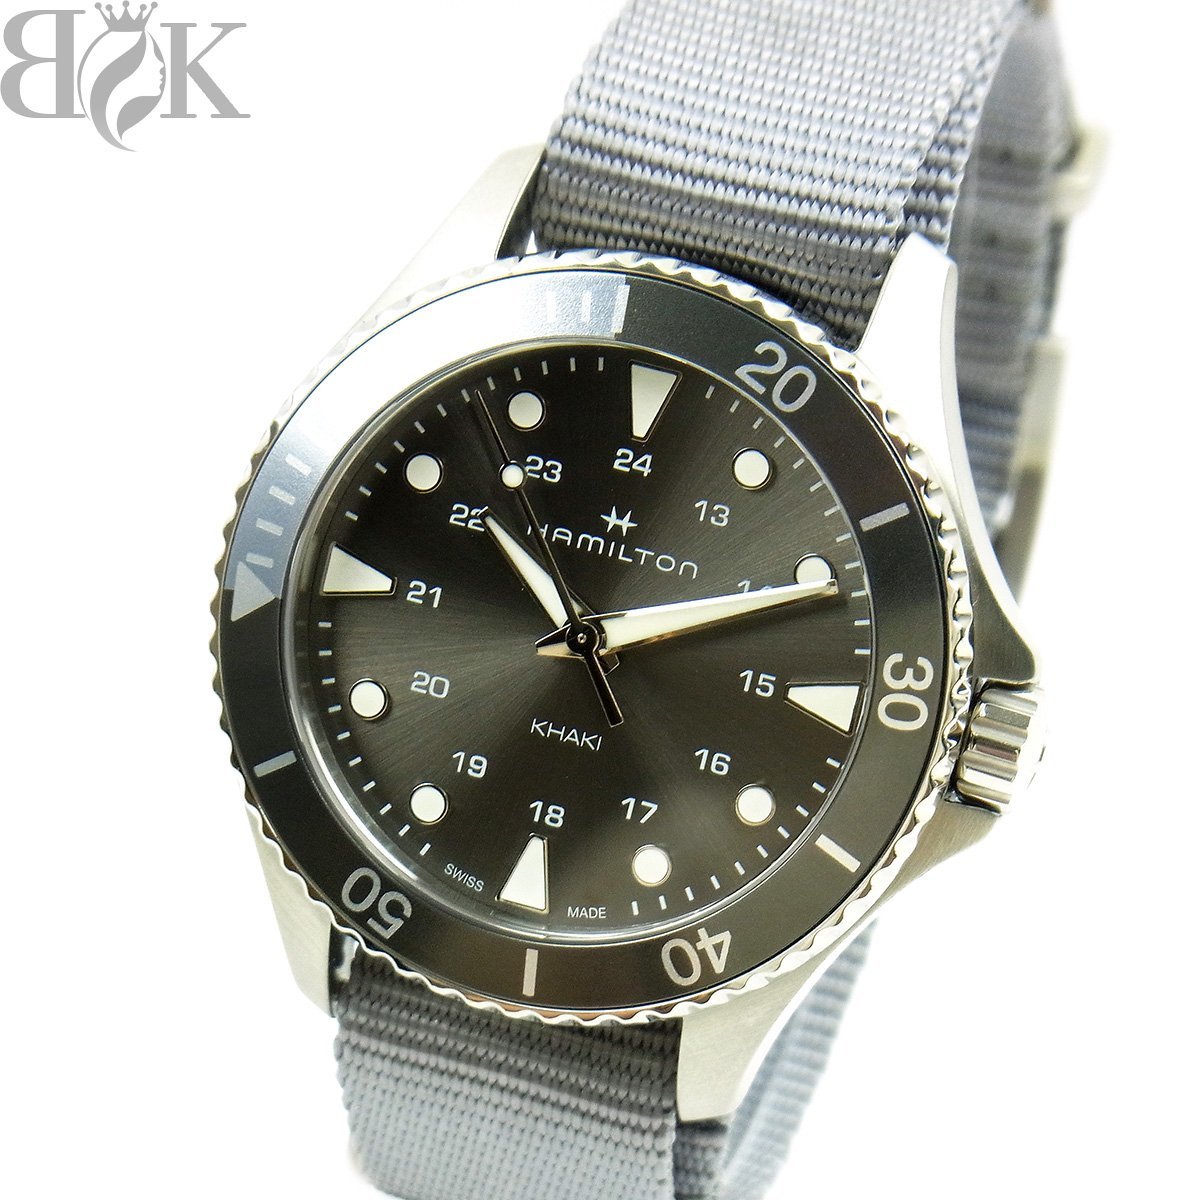 豪華ラッピング無料 グレー系文字盤 クォーツ 腕時計 メンズ H822110